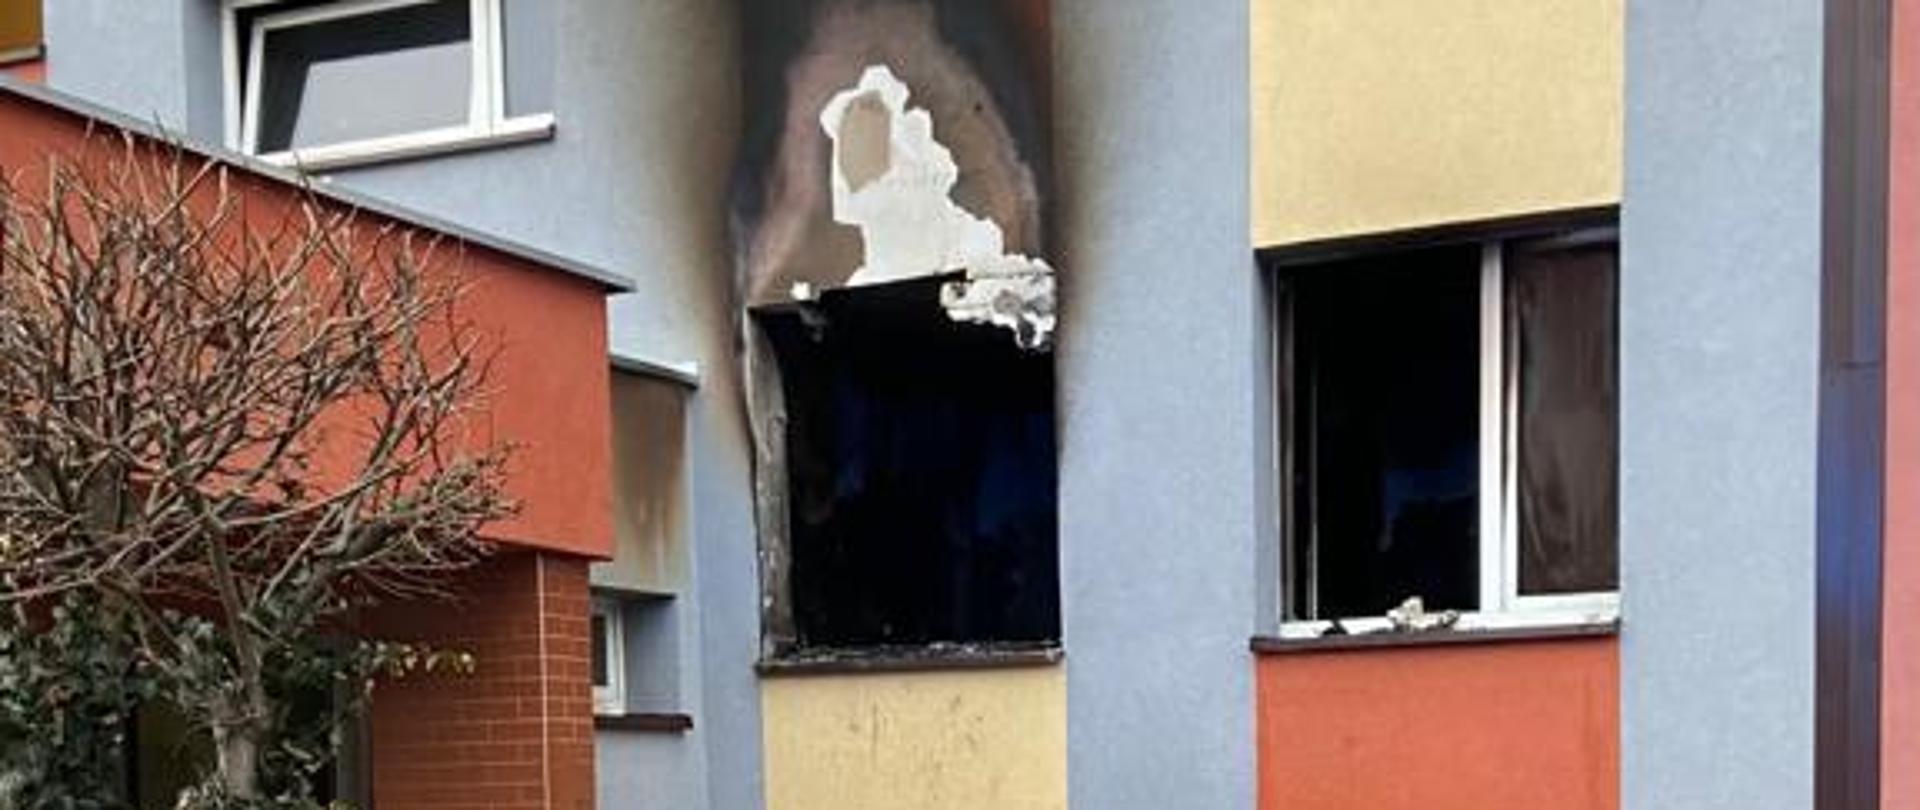 Zdjęcie przedstawia wyposażenie mieszkania znajdujące się przed mieszkaniem po pożarze. Mieszkanie po pożarze na parterze budynku wielorodzinnego.